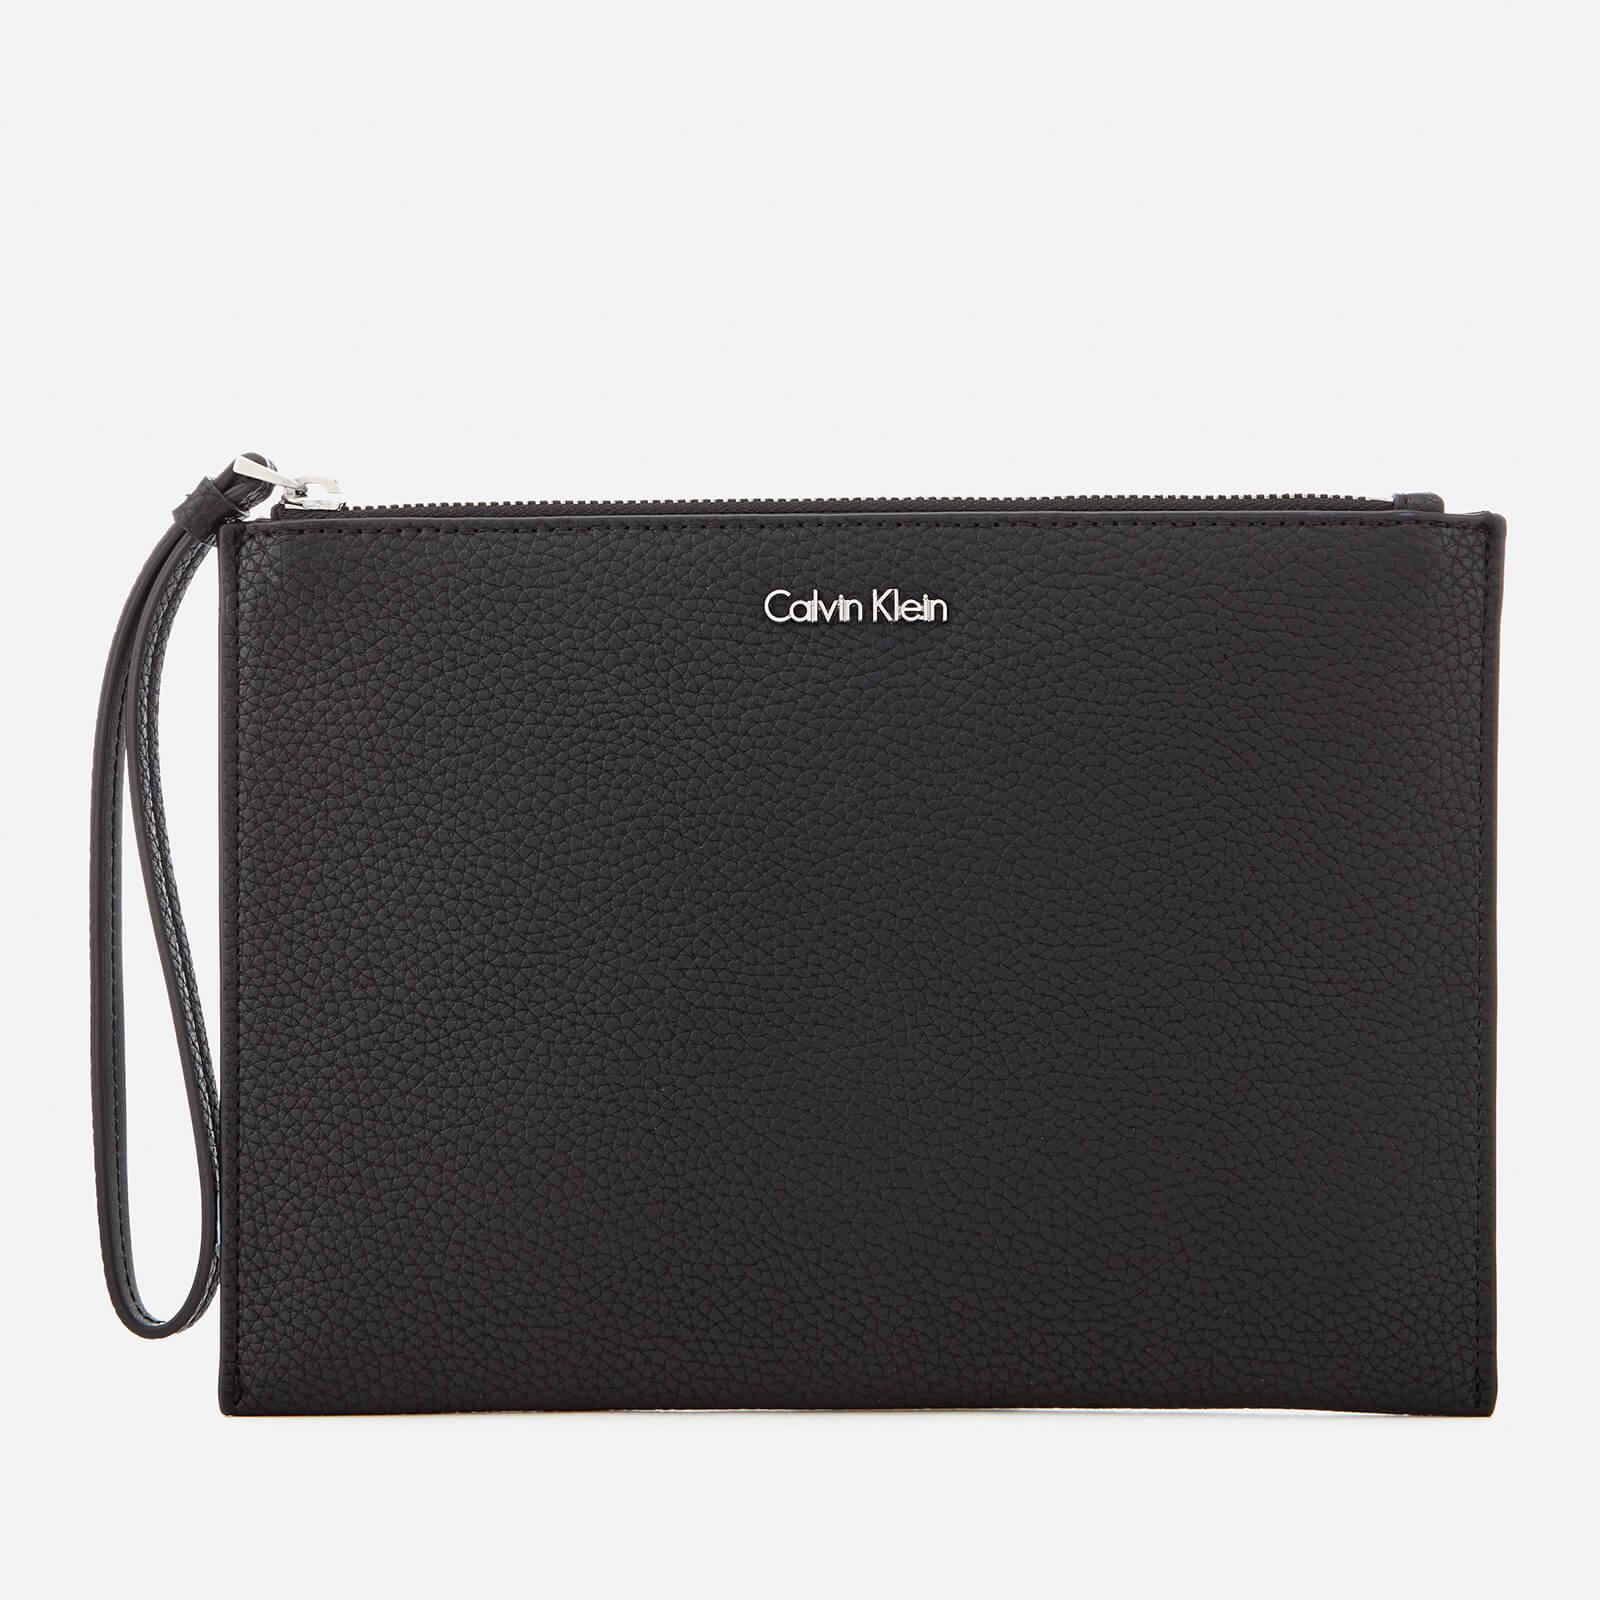 Calvin Klein Edit Pouch Bag in Black - Lyst